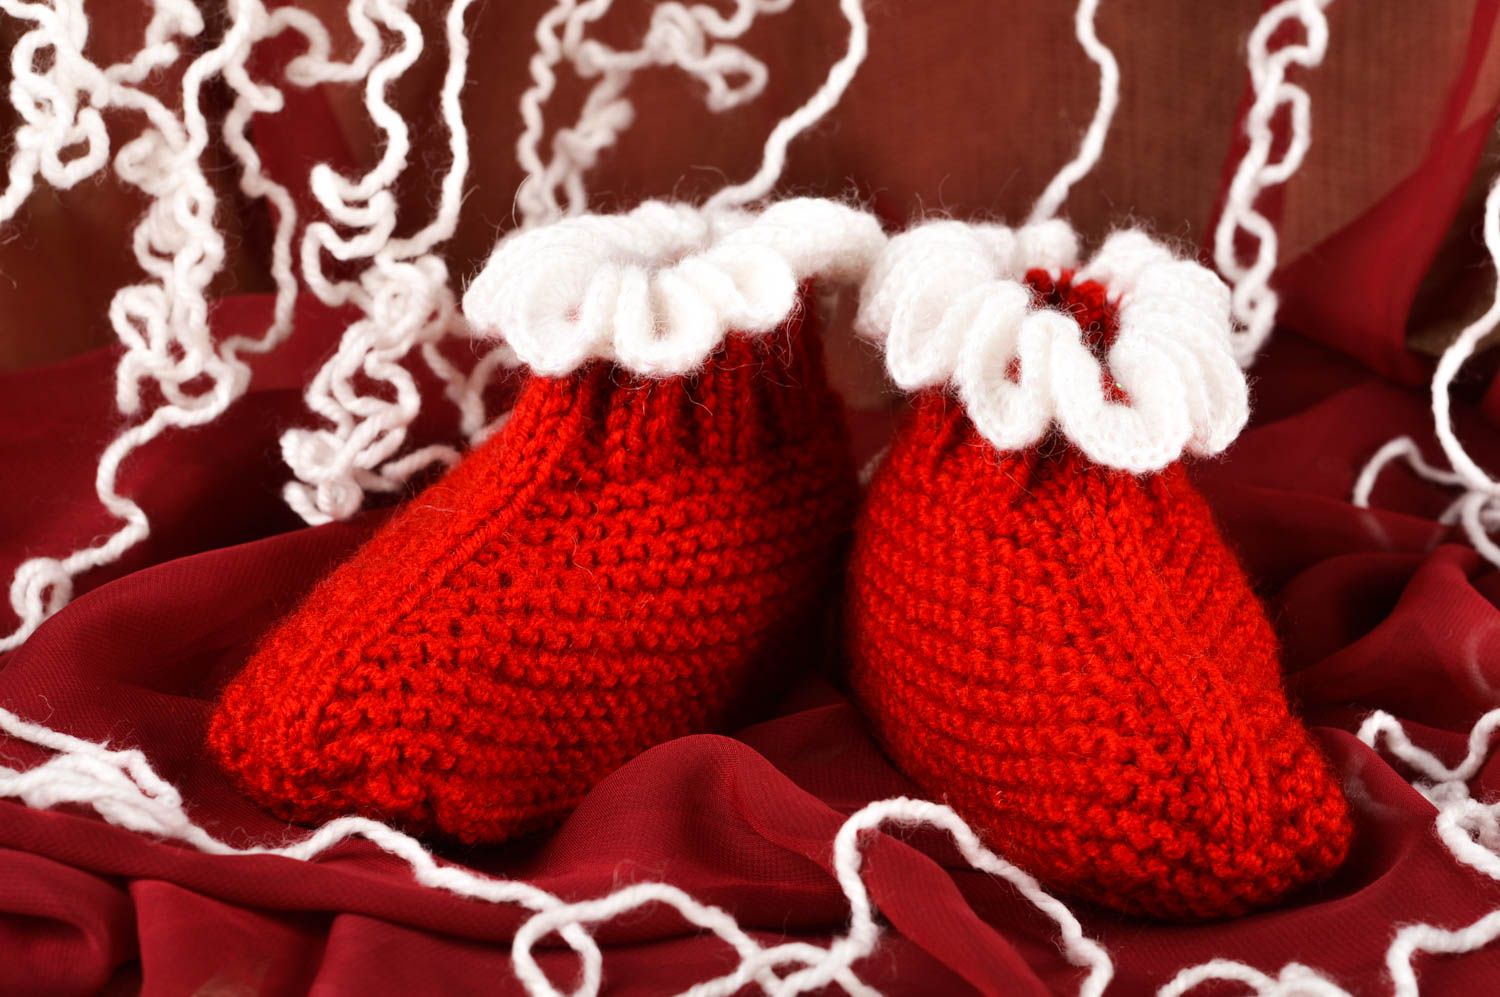 Chaussons de bébé faits main Chaussures bébé rouges tricotés Vêtement bébé photo 1